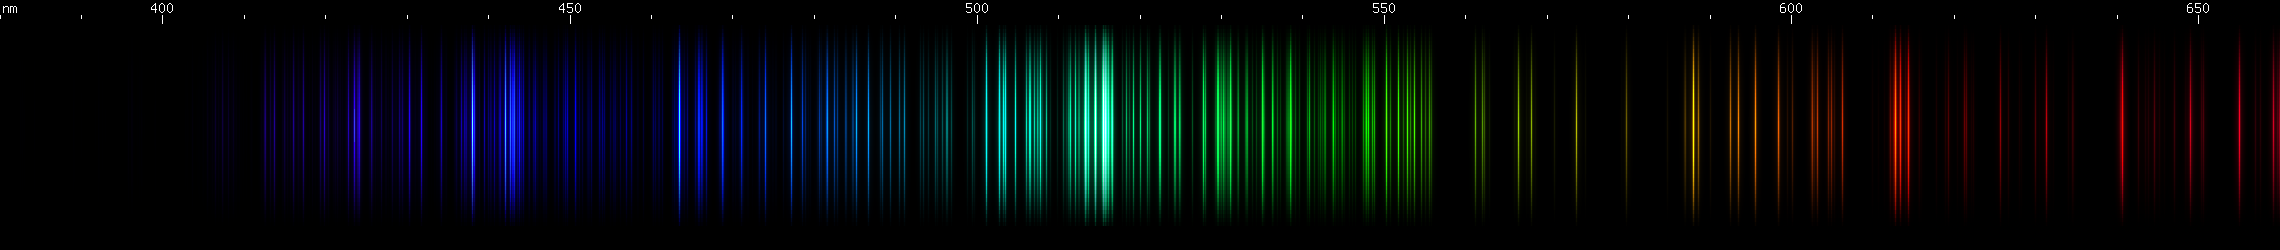 Spectral lines of Zirconium.